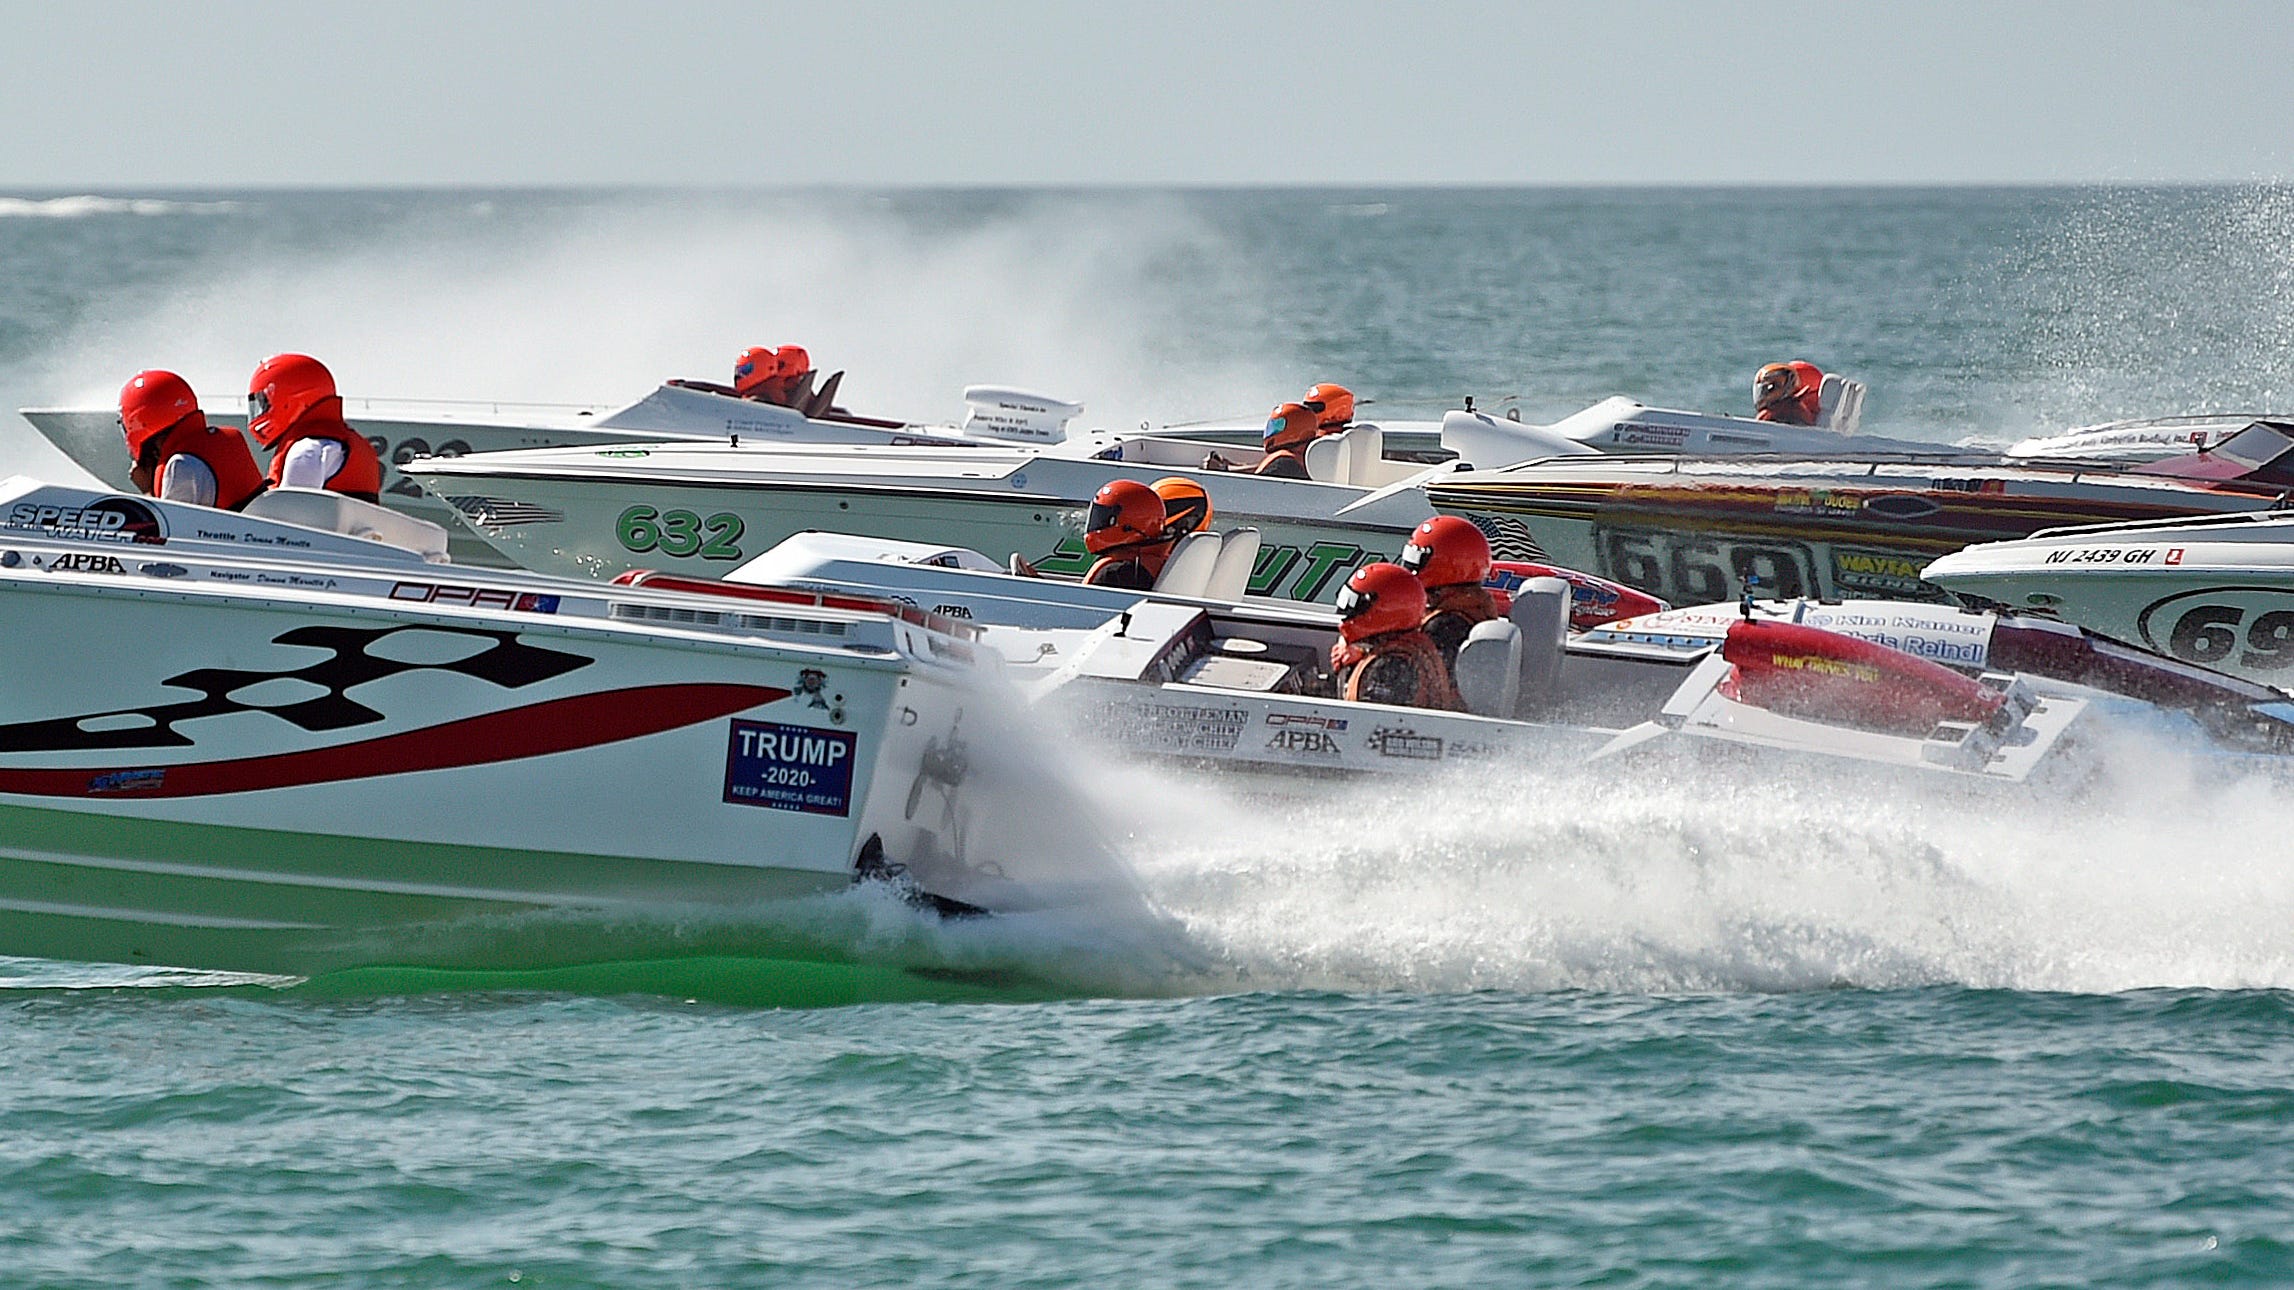 englewood florida powerboat races